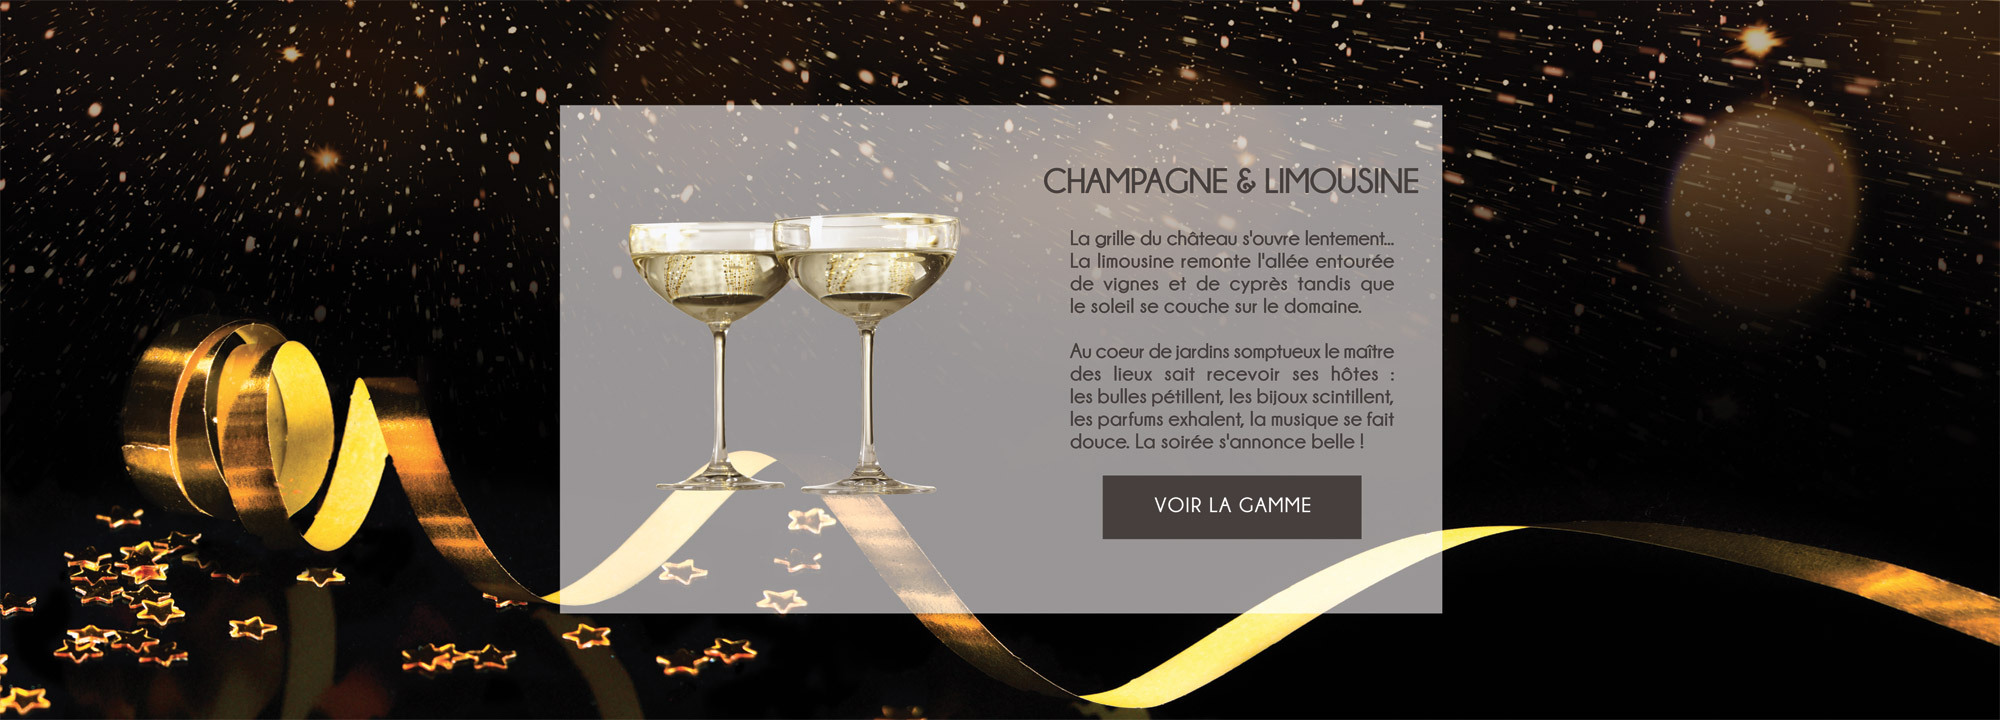 Parfum d'Ambiance Cuir Impérial - Senteur Champagne & Limousine - L'esprit Chic